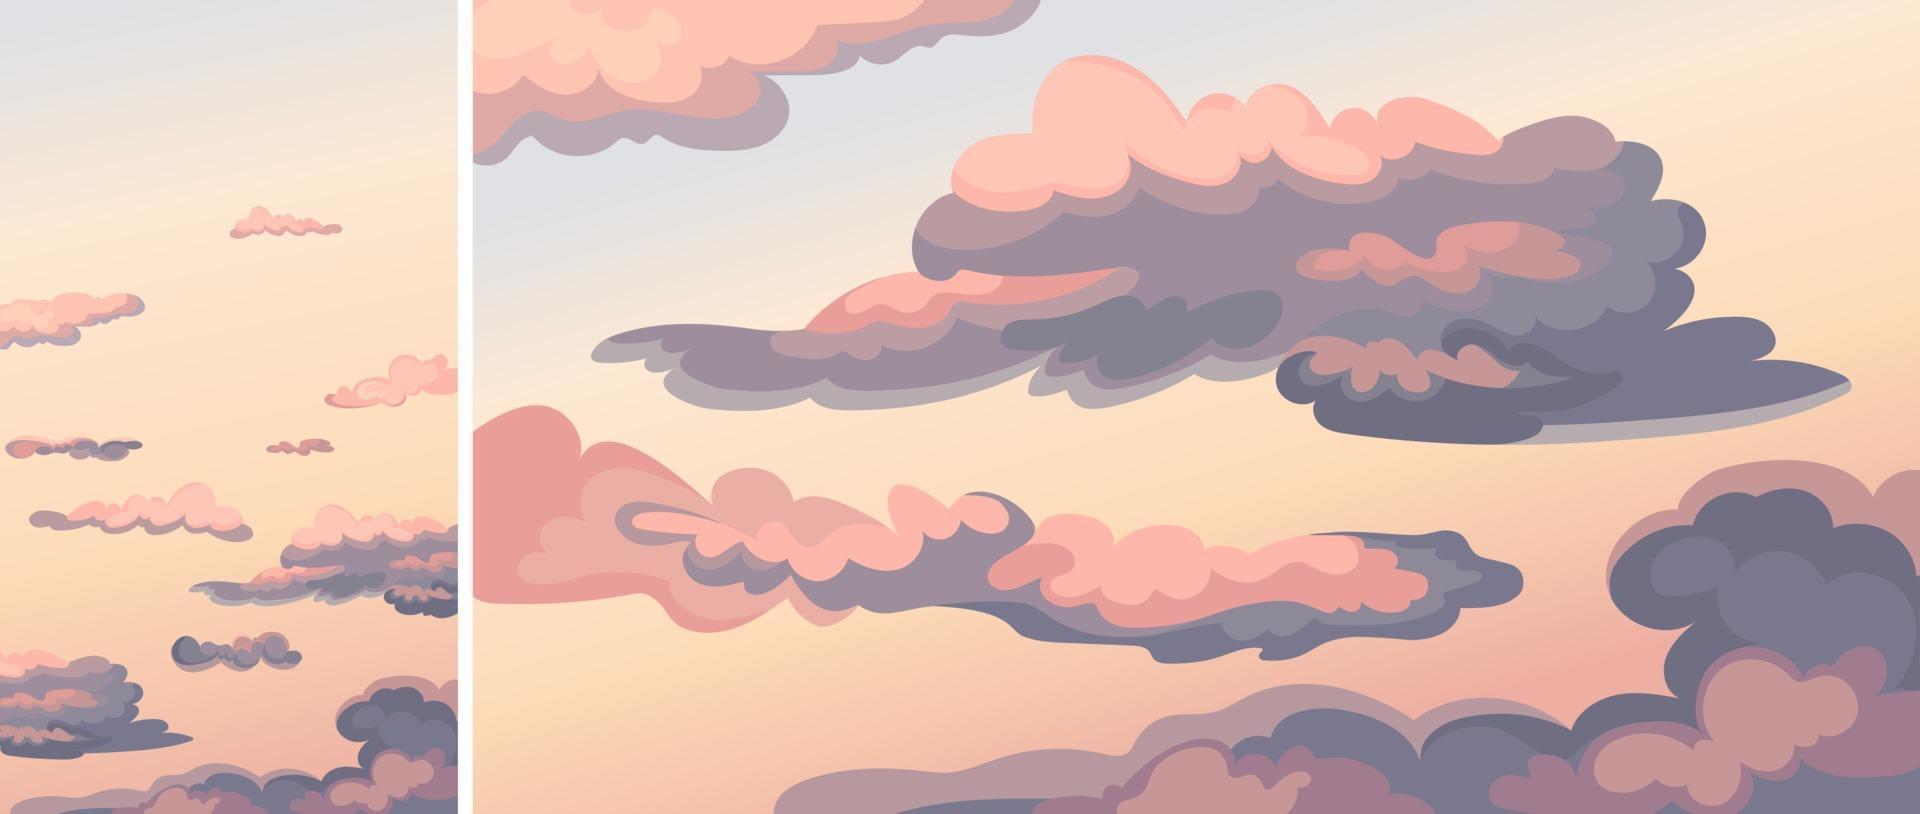 Himmel mit Wolken bei Sonnenuntergang. vektor